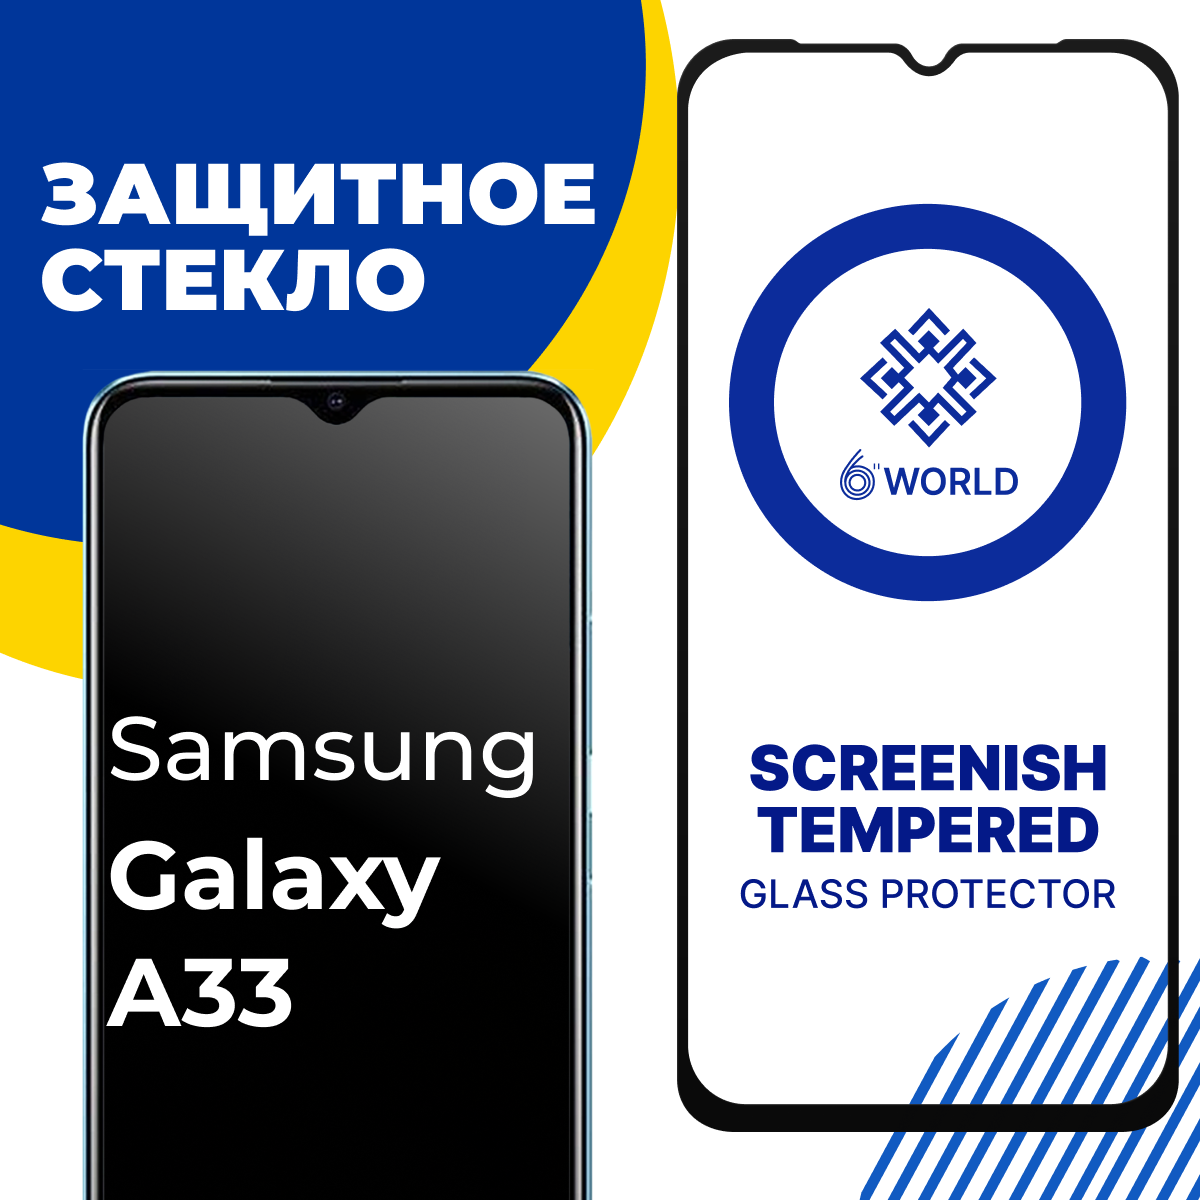 Глянцевое защитное стекло для телефона Samsung Galaxy A33 / Противоударное закаленное стекло на Самсунг Галакси А33 / SCREENISH GLASS